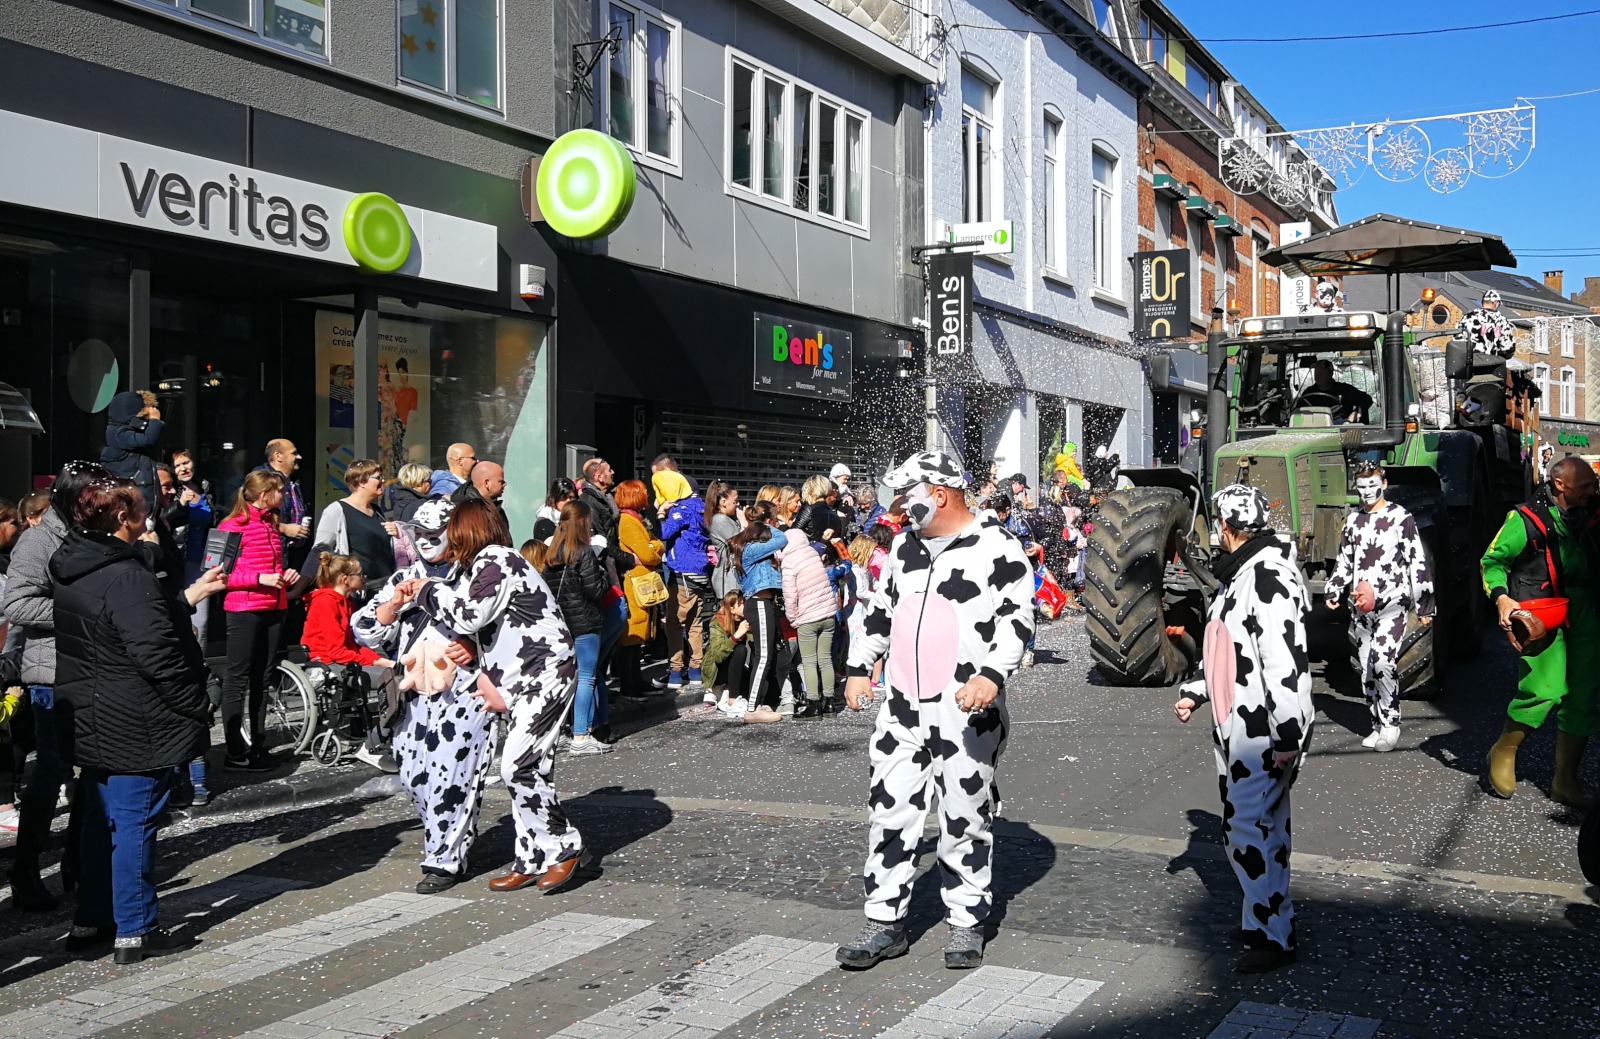 Personnes déguisées en vaches défilant dans les rues du village